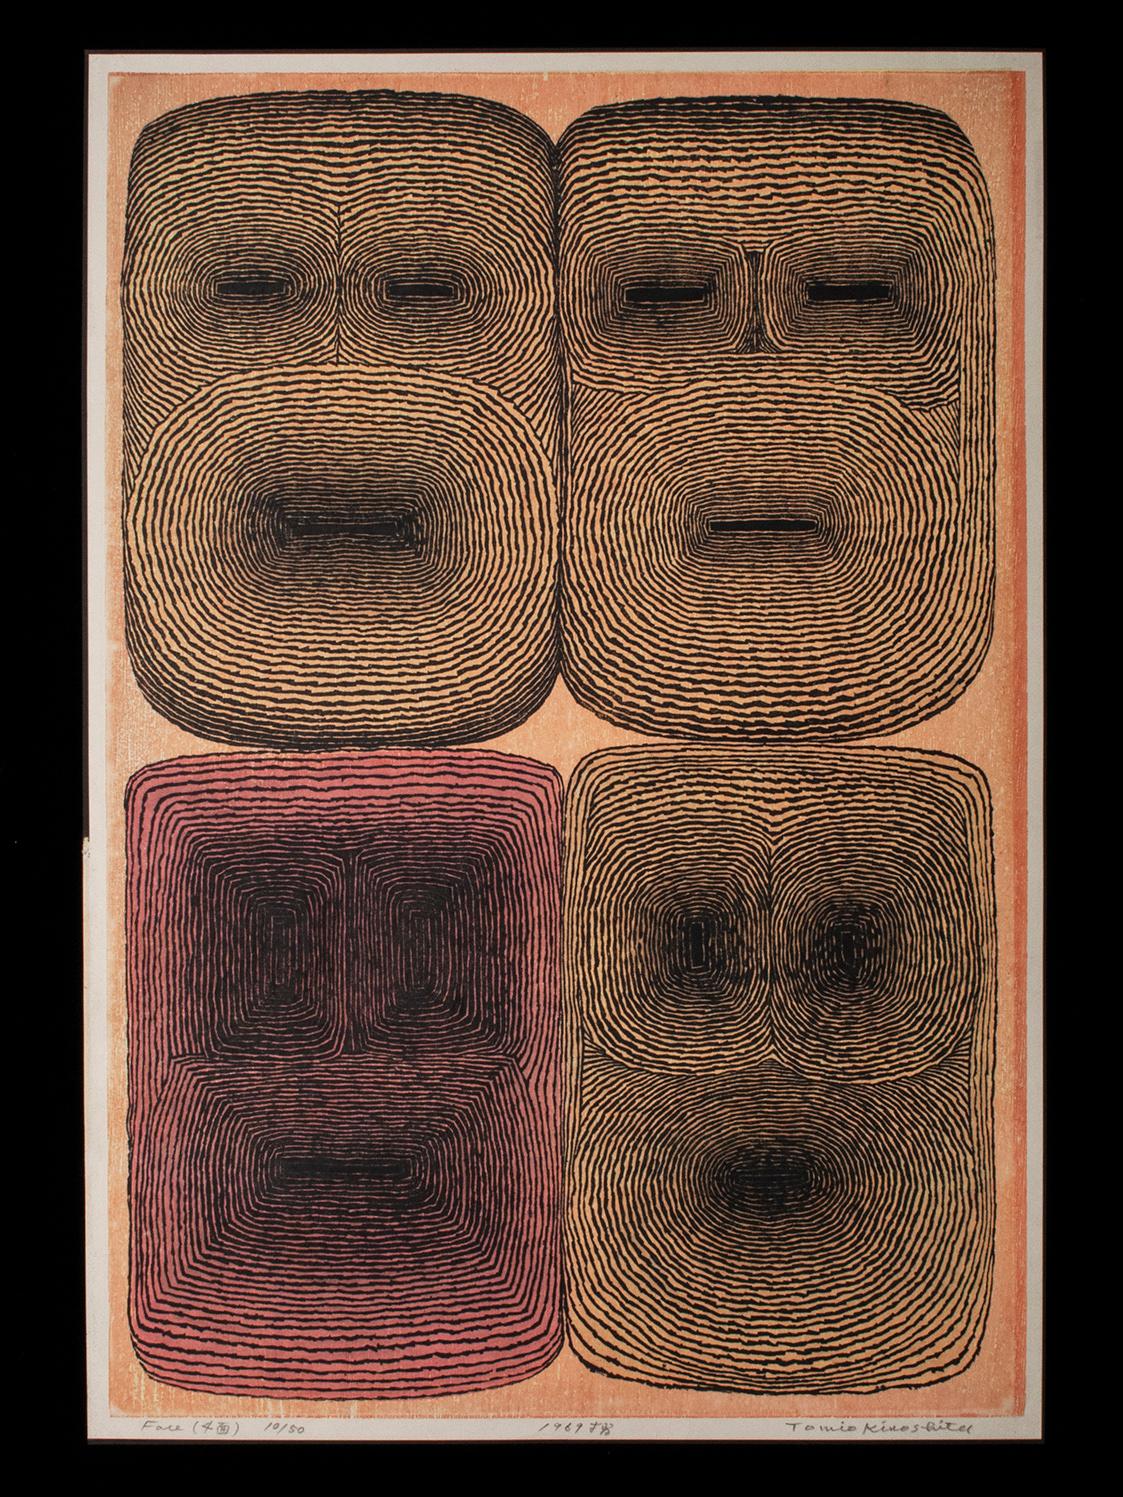 Visages (4 visages), 1969
Tomio Kinoshita (1923-2014), Japon
Gravure sur bois
Papier, pigment, encre sumi
Image : 27 de haut sur 18,25 de large (68,5 sur 46,4 cm)
Taille du papier : 28 pouces de haut par 19 pouces de large (71 par 48